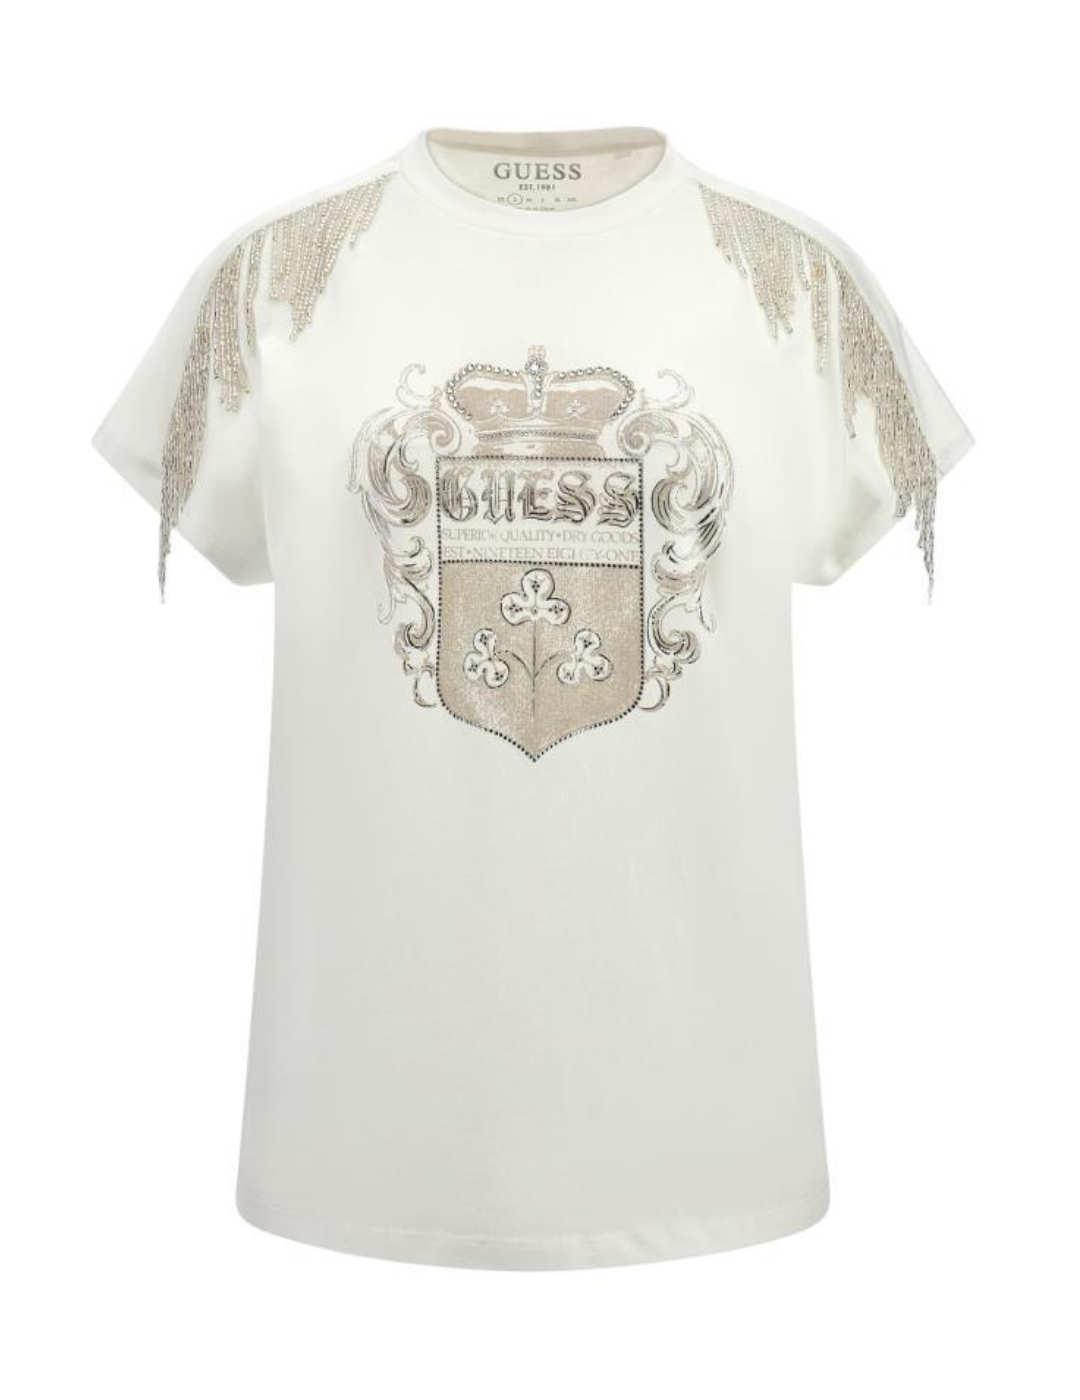 Camiseta Guess Royal blanco manga sisa para mujer